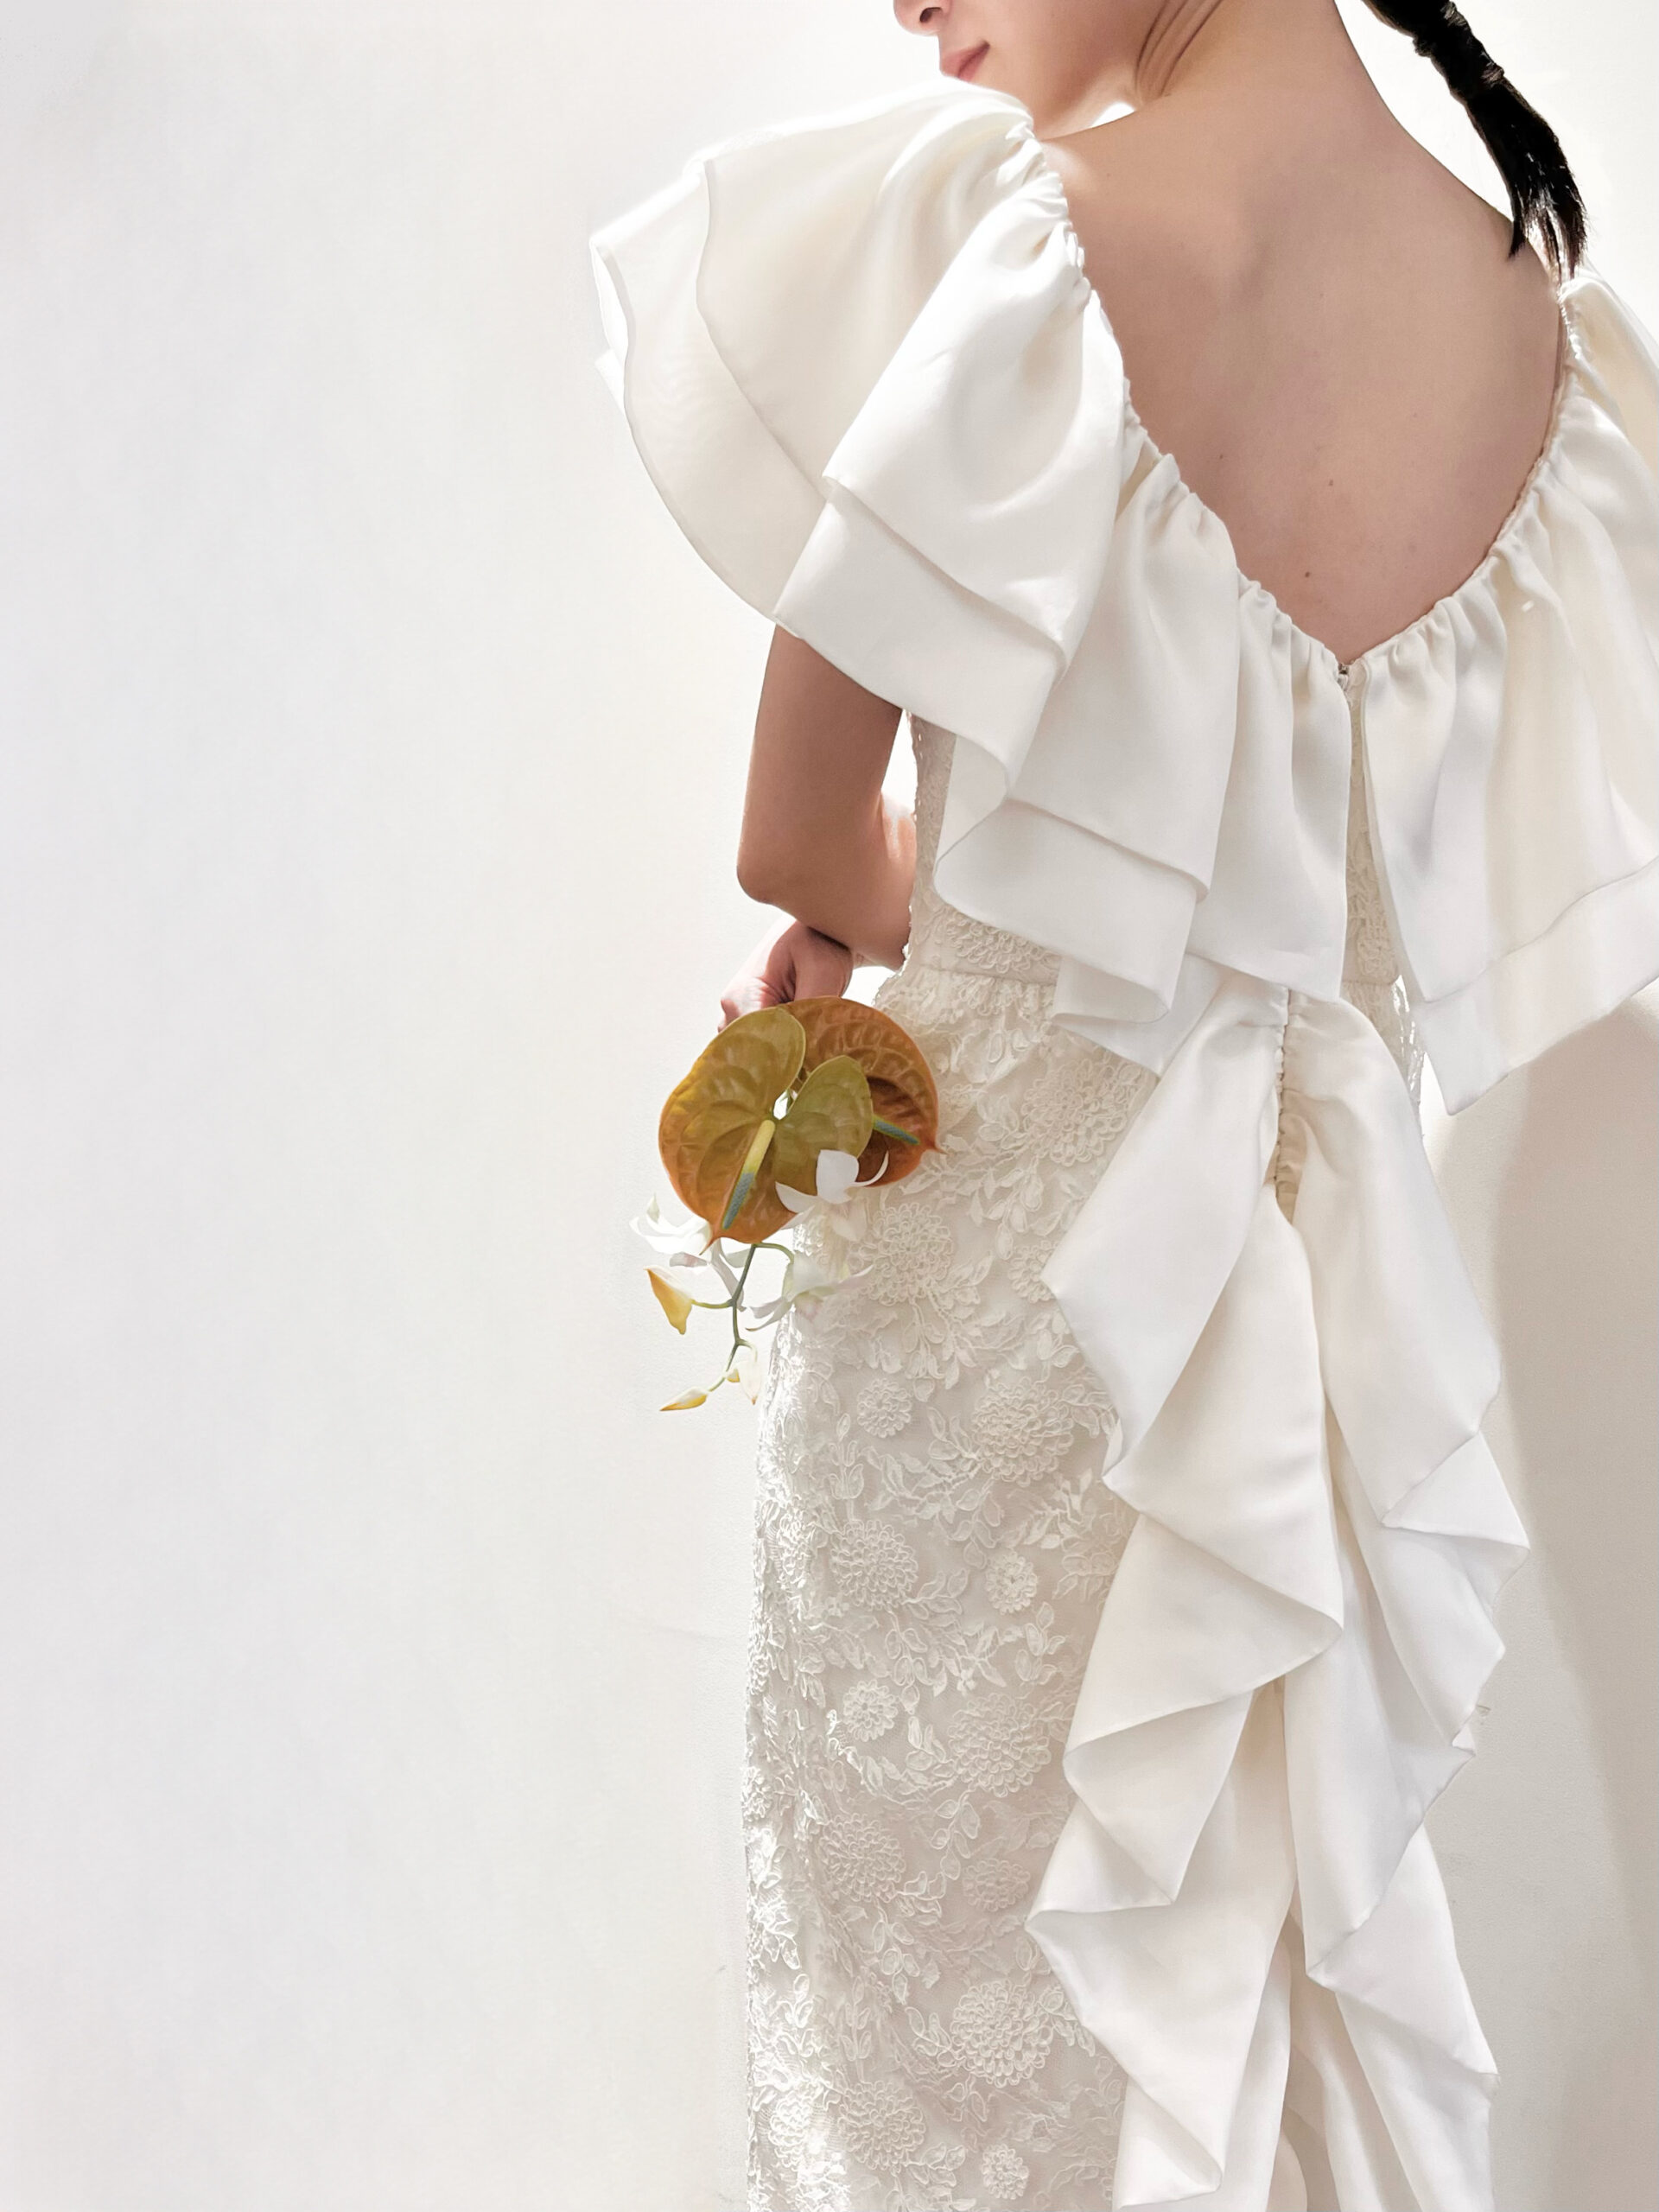 関西エリアの中でもおしゃれな神戸のプレ花嫁におすすめしたい人とかぶらないバックスタイルが特徴的なマルカリアンの新作の刺繍入りのスレンダーラインのウェディングドレス